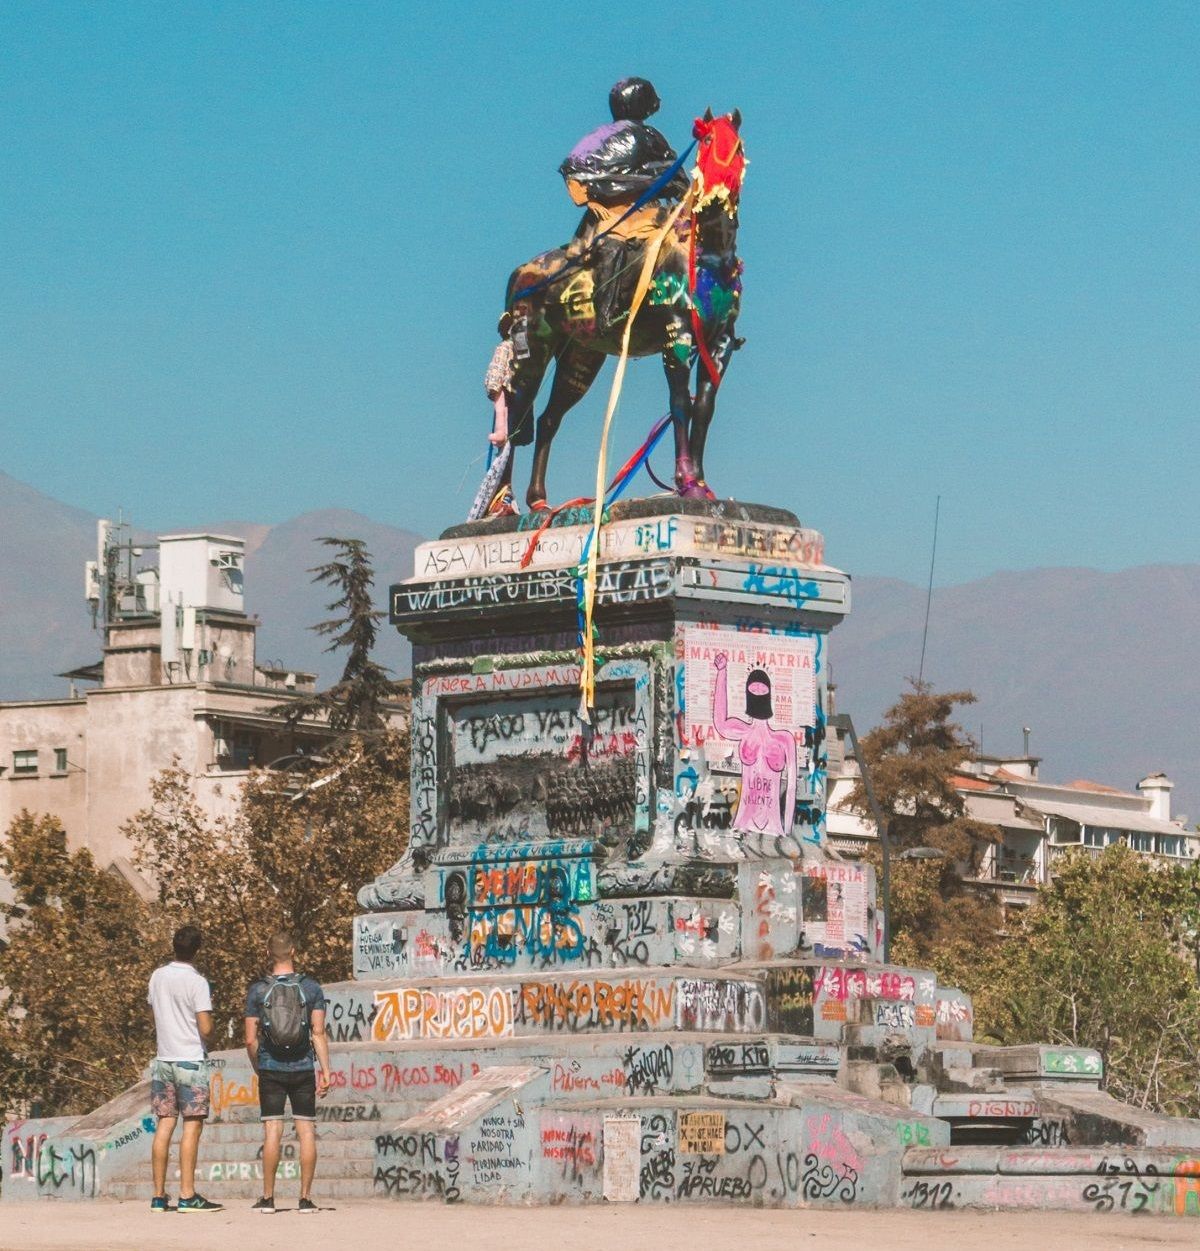 El monumento al general Baquedano, en Santiago de Chile, el 19 marzo 2020. UNSPLASH/ALLAN RODRIGUES